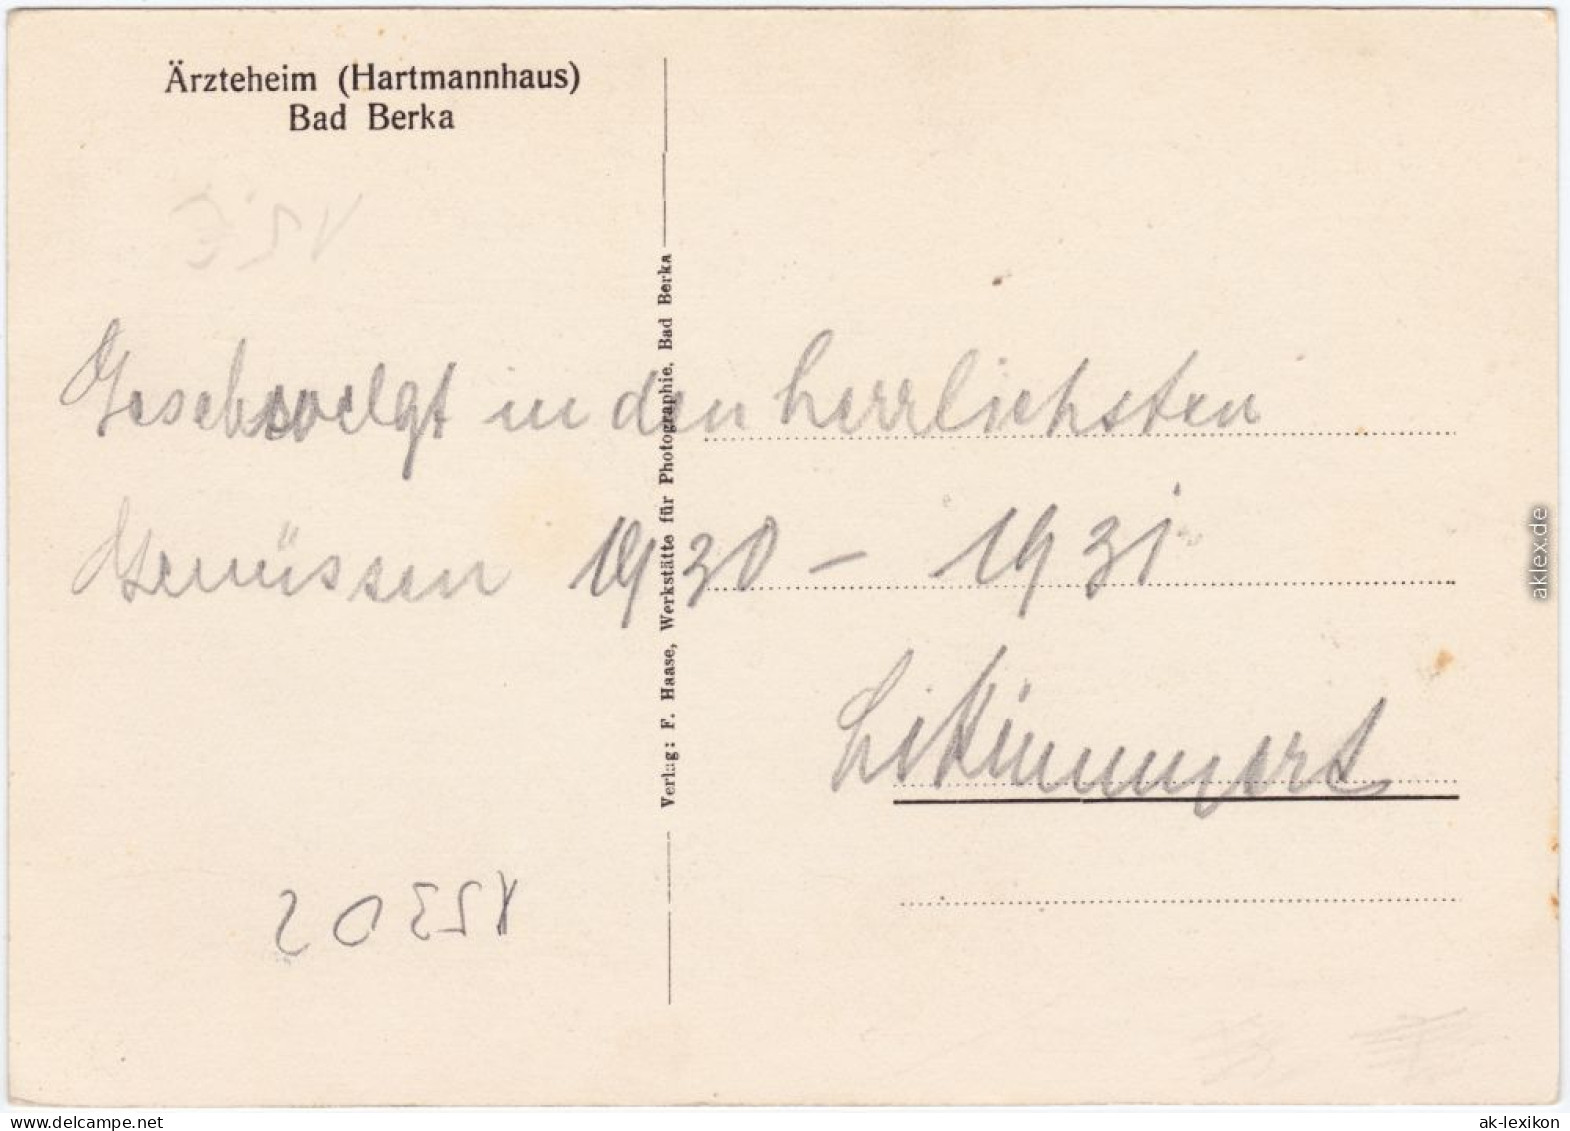 Bad Berka Innenansichten Ärzteheim: Hartmannhaus/Innenansichten Ärzteheim: Hartmannhaus 1928  - Bad Berka